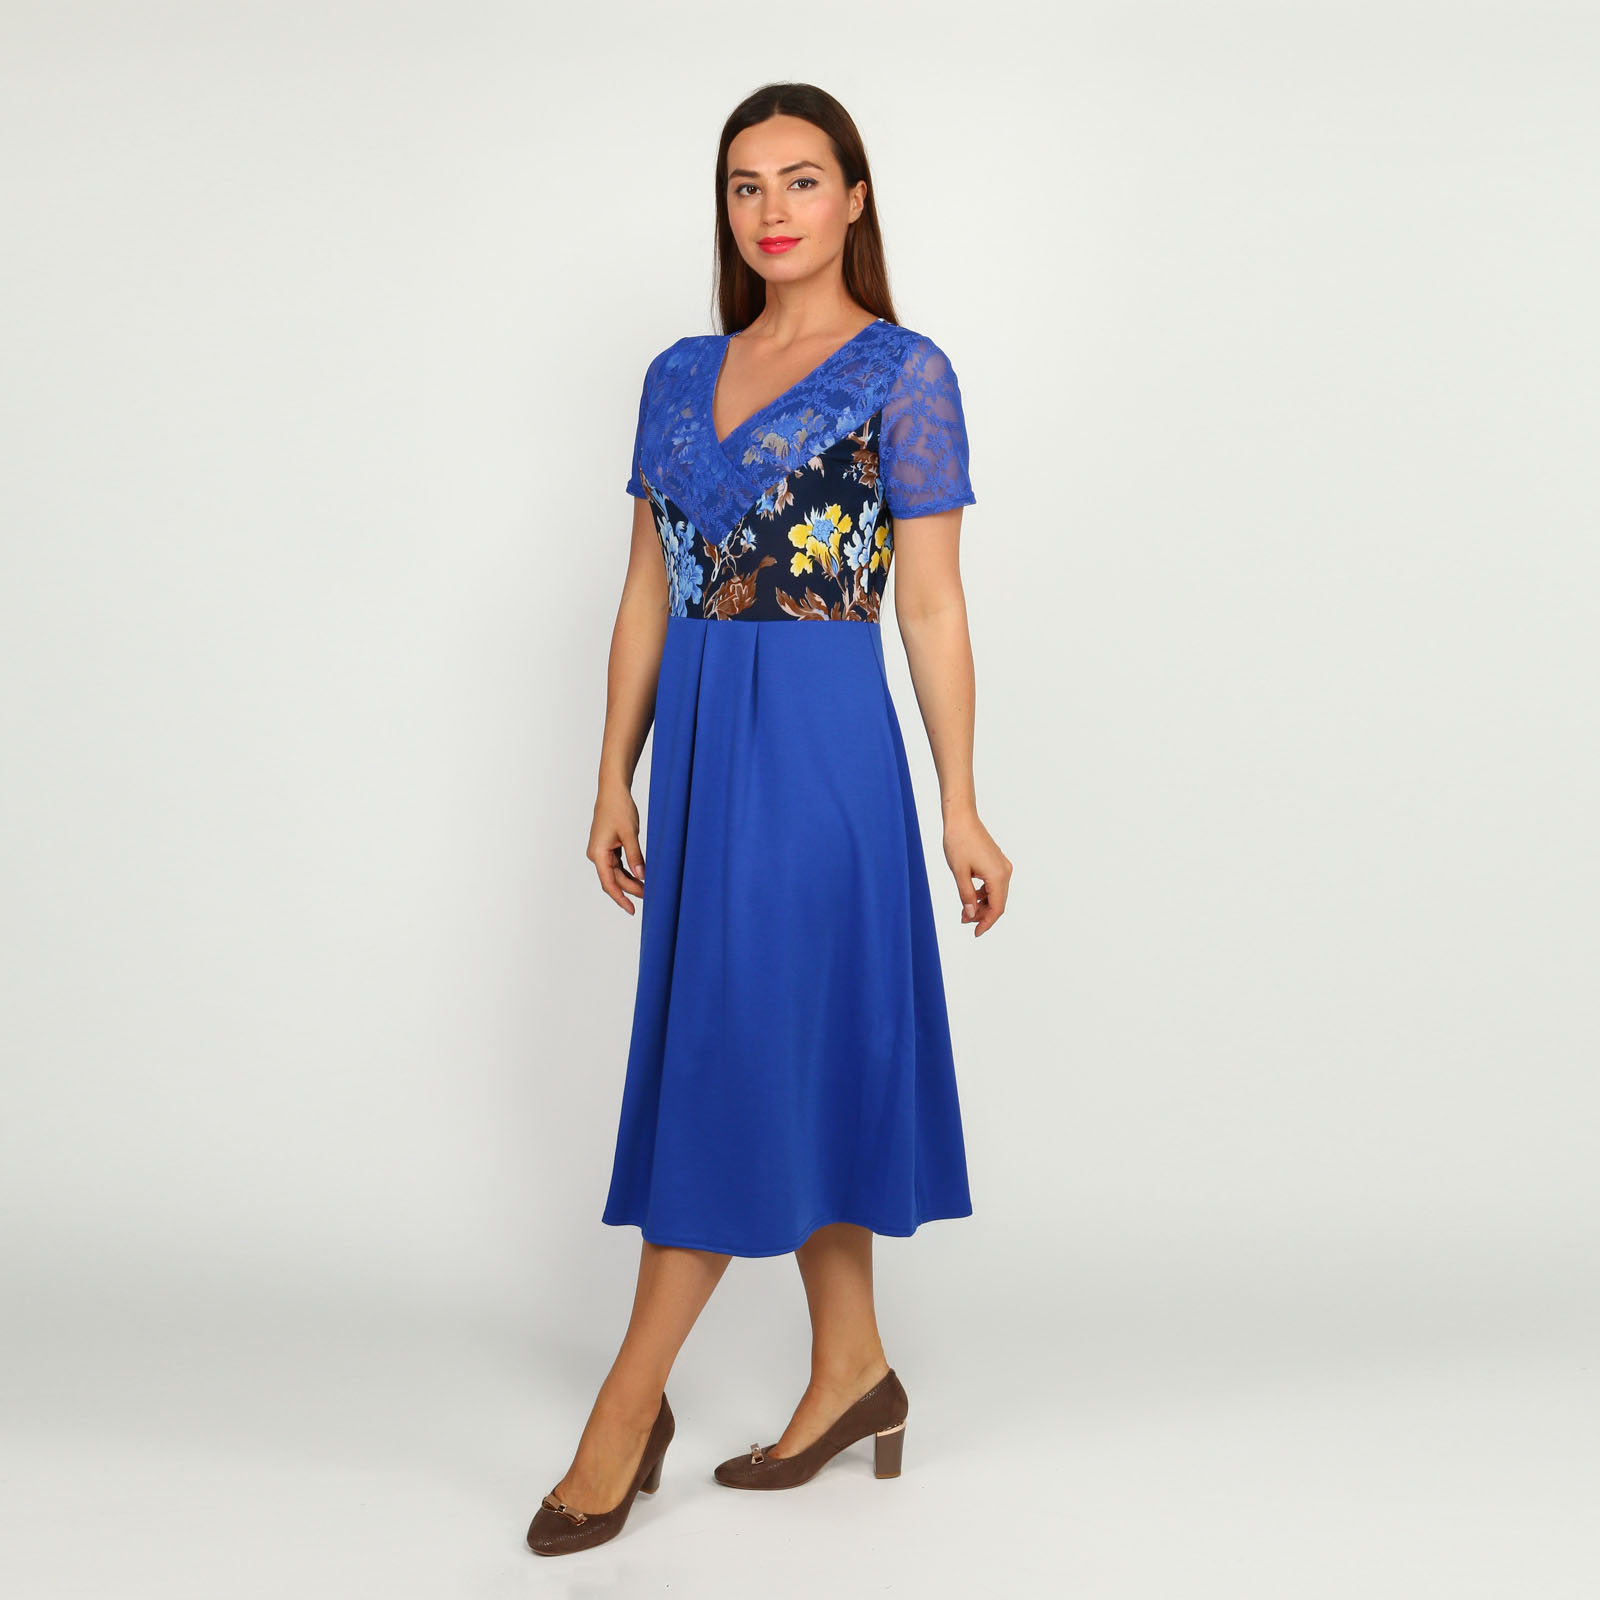 Платье с гипюровыми вставками и принтом Bianka Modeno, размер 54, цвет синий - фото 9